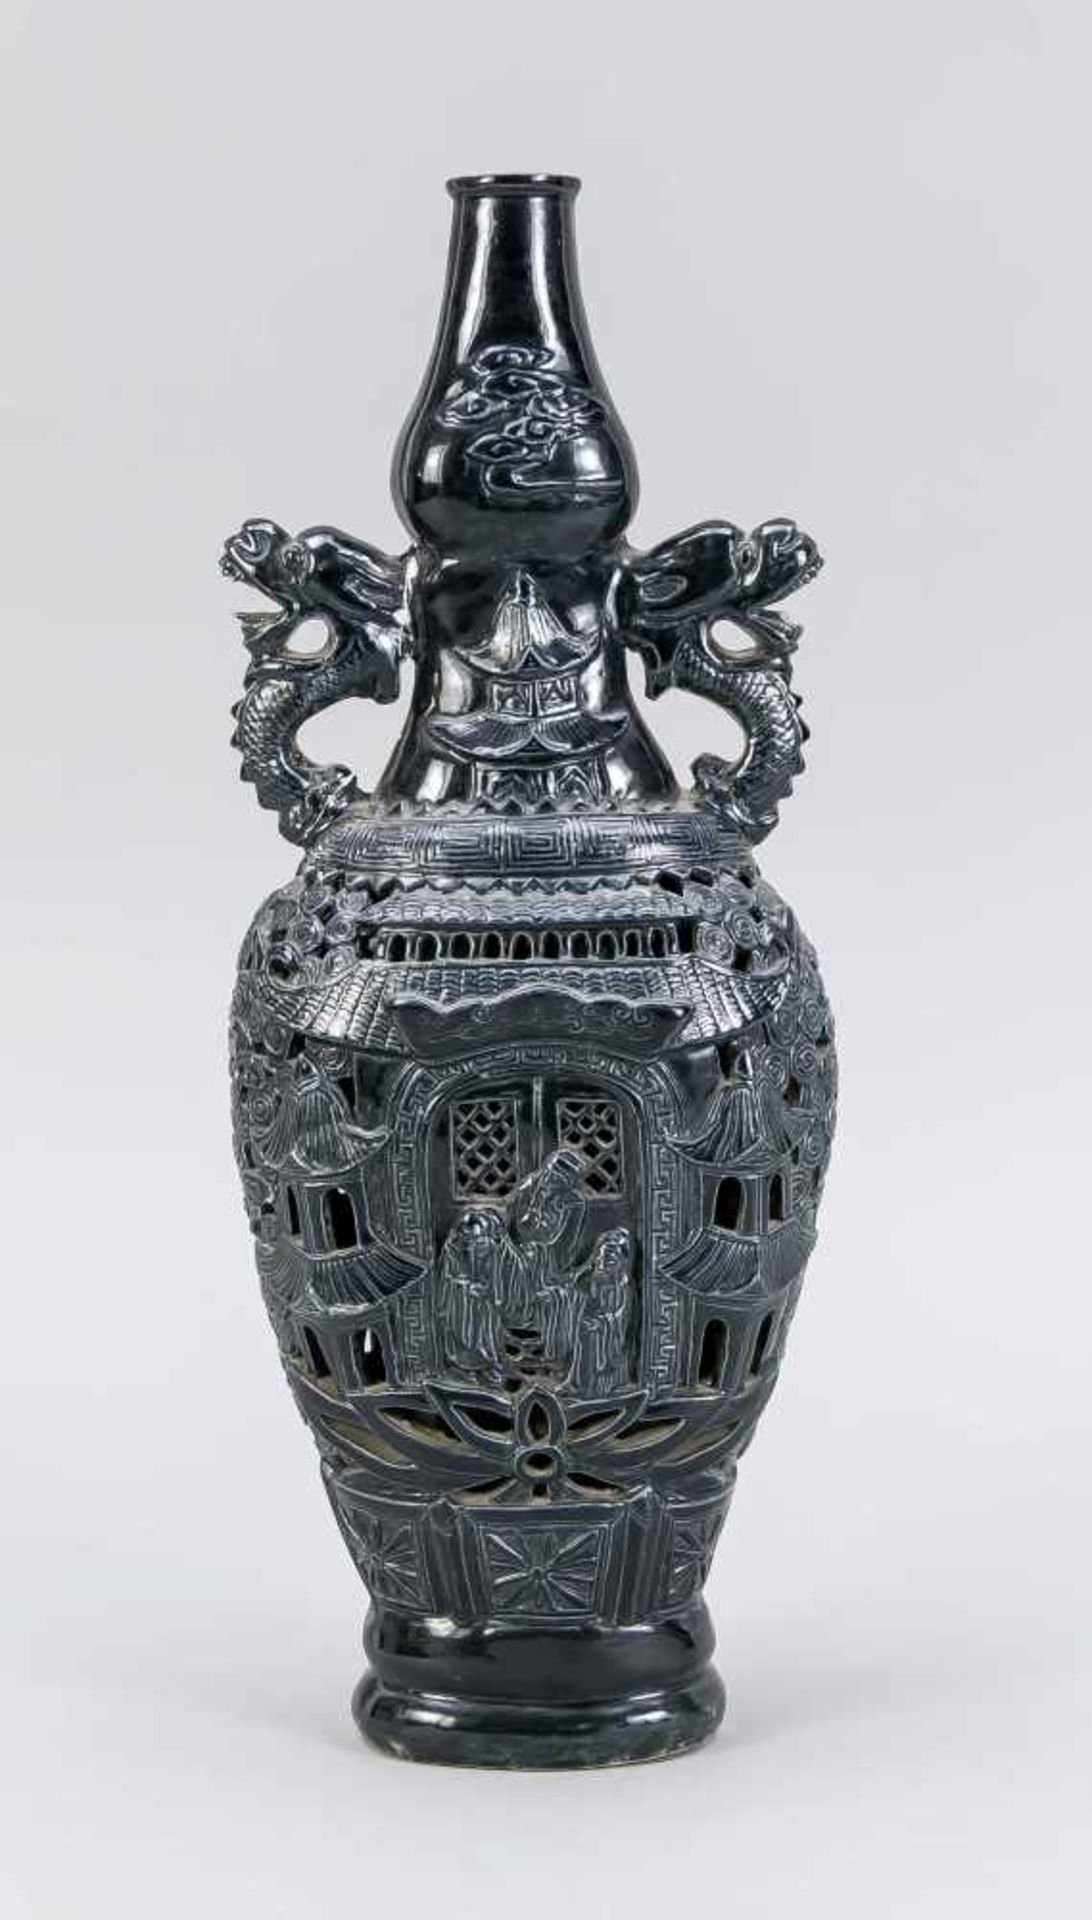 Monochrome Vase mit Durchbruch-Dekor, China, 20. Jh. Leicht gedrückte Form mit seitlichangesetzten